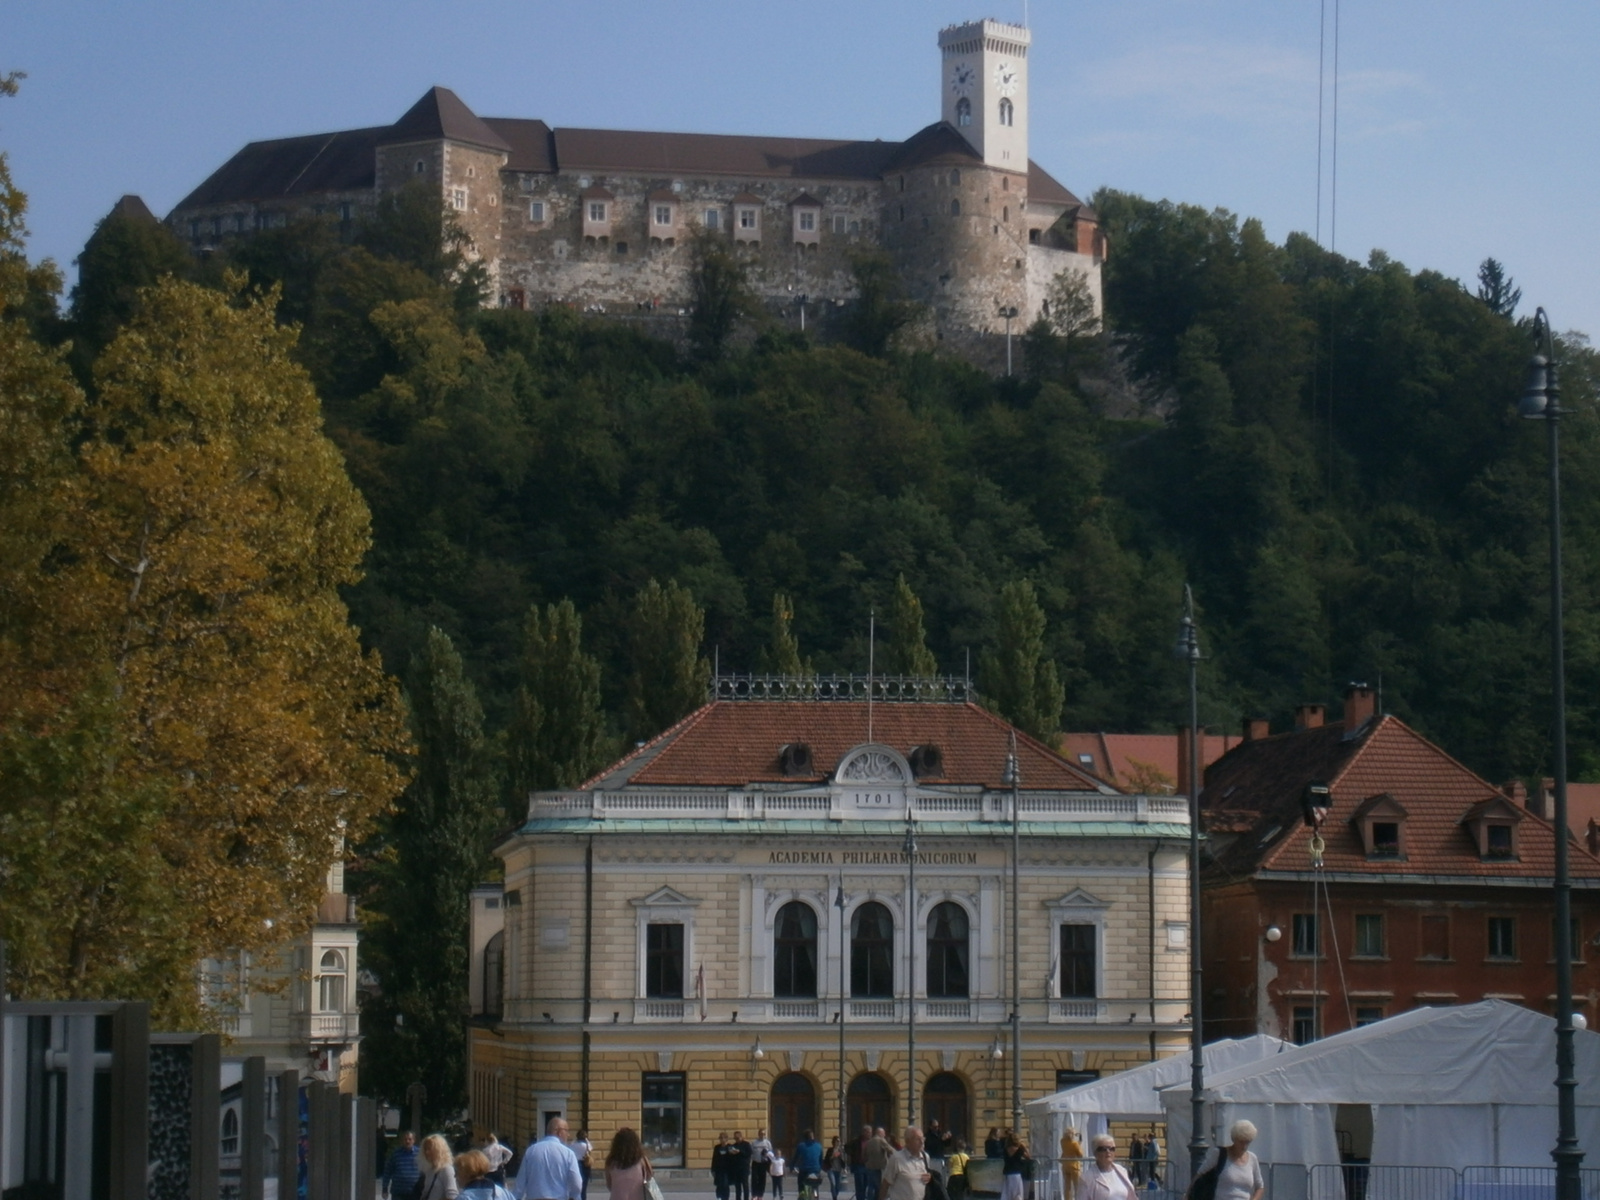 Ljubljanai vár